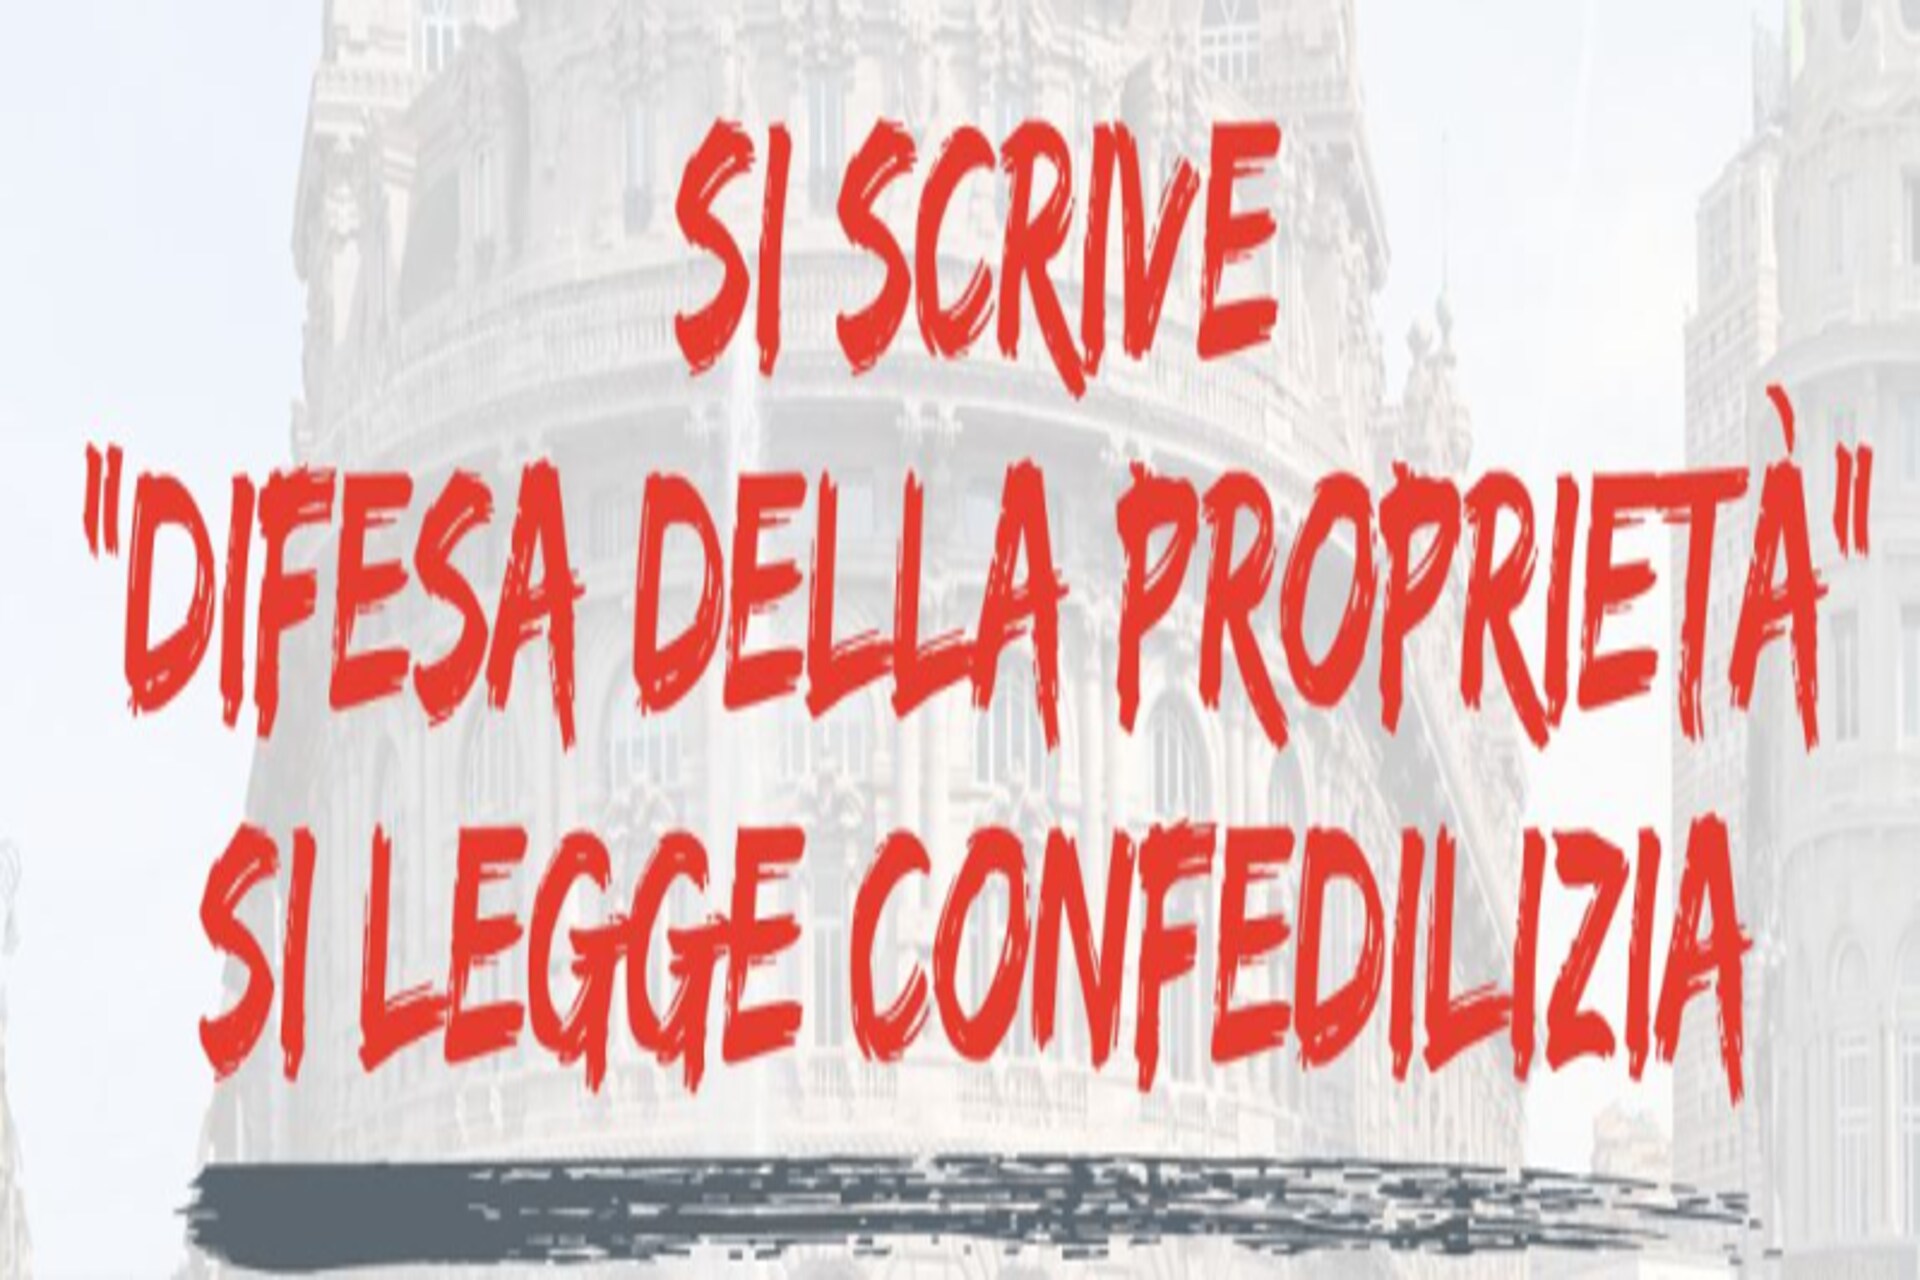 Proprietà: un motto di Confedilizia in Italia